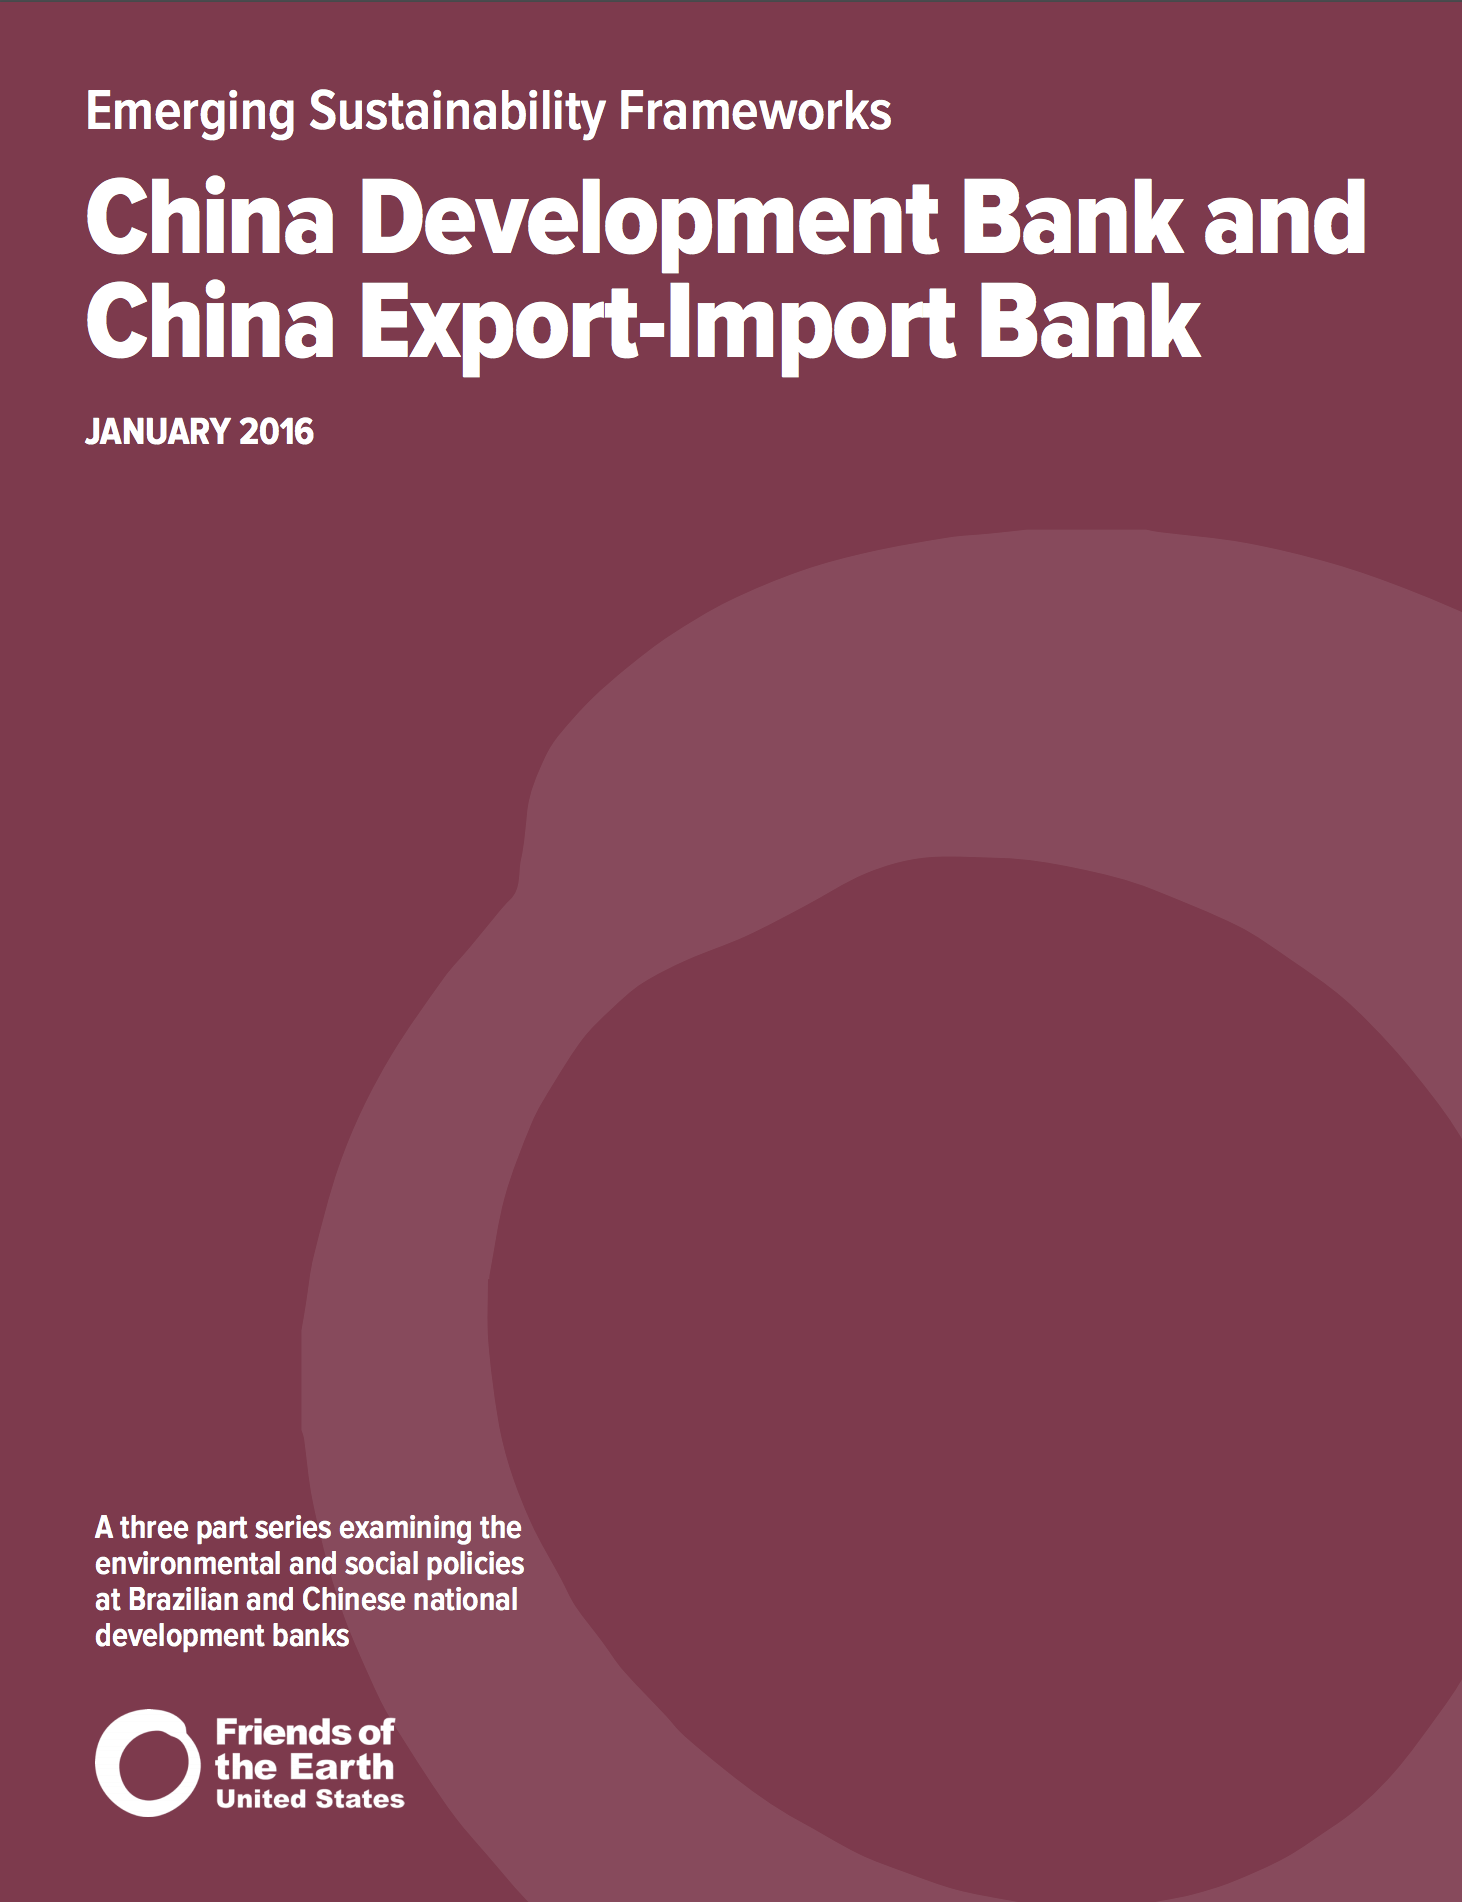 Emerging sustainability frameworks: China Development Bank and China Export-Import Bank